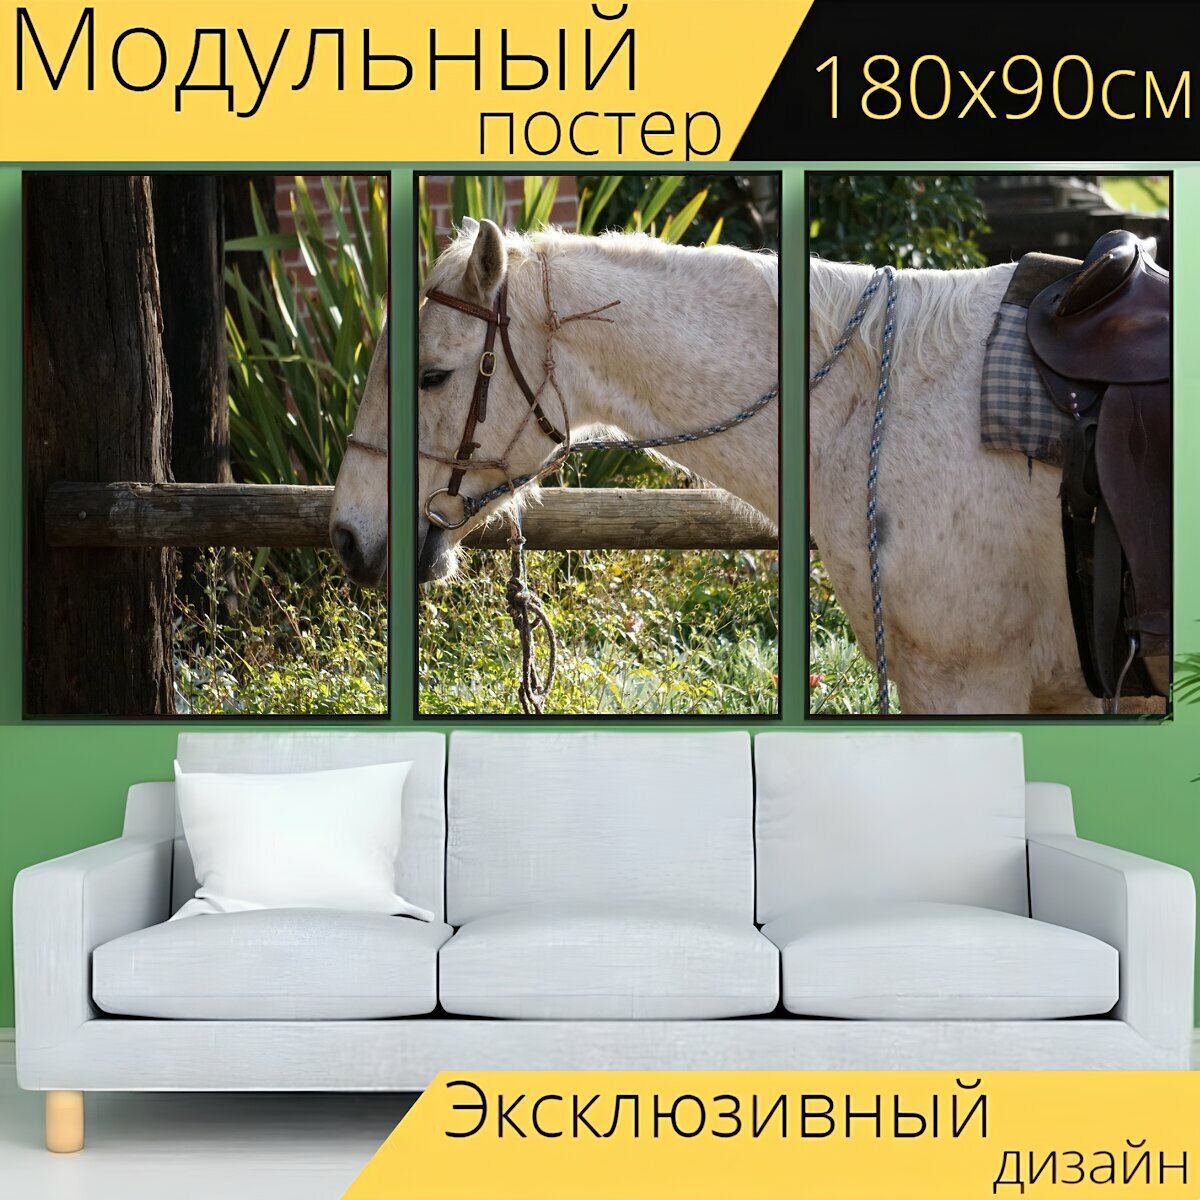 Модульный постер "Лошадь, стабильный, животное" 180 x 90 см. для интерьера